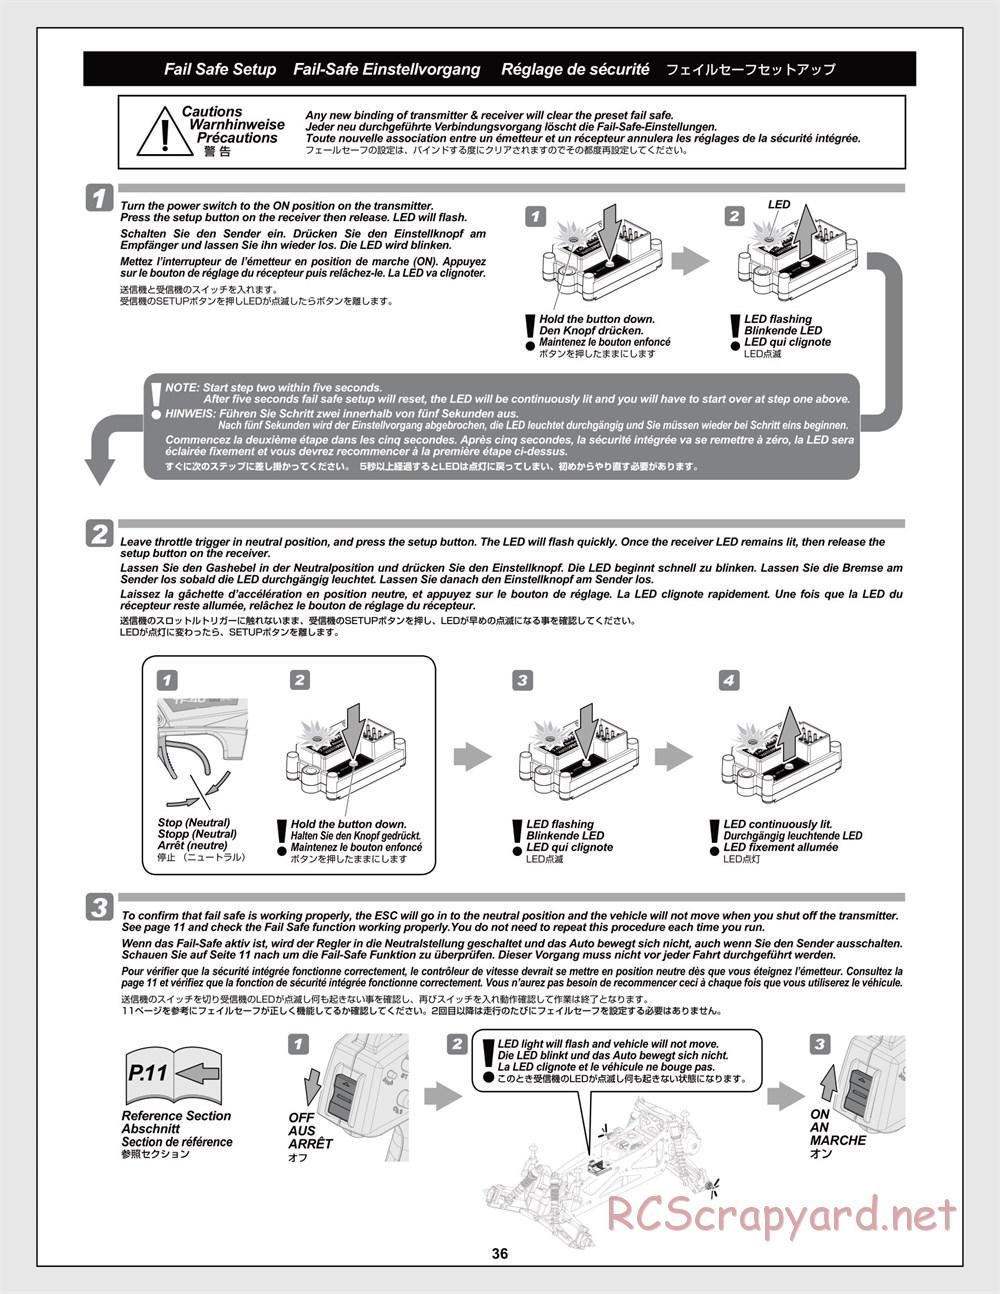 HPI - Jumpshot MT V2 - Manual - Page 36